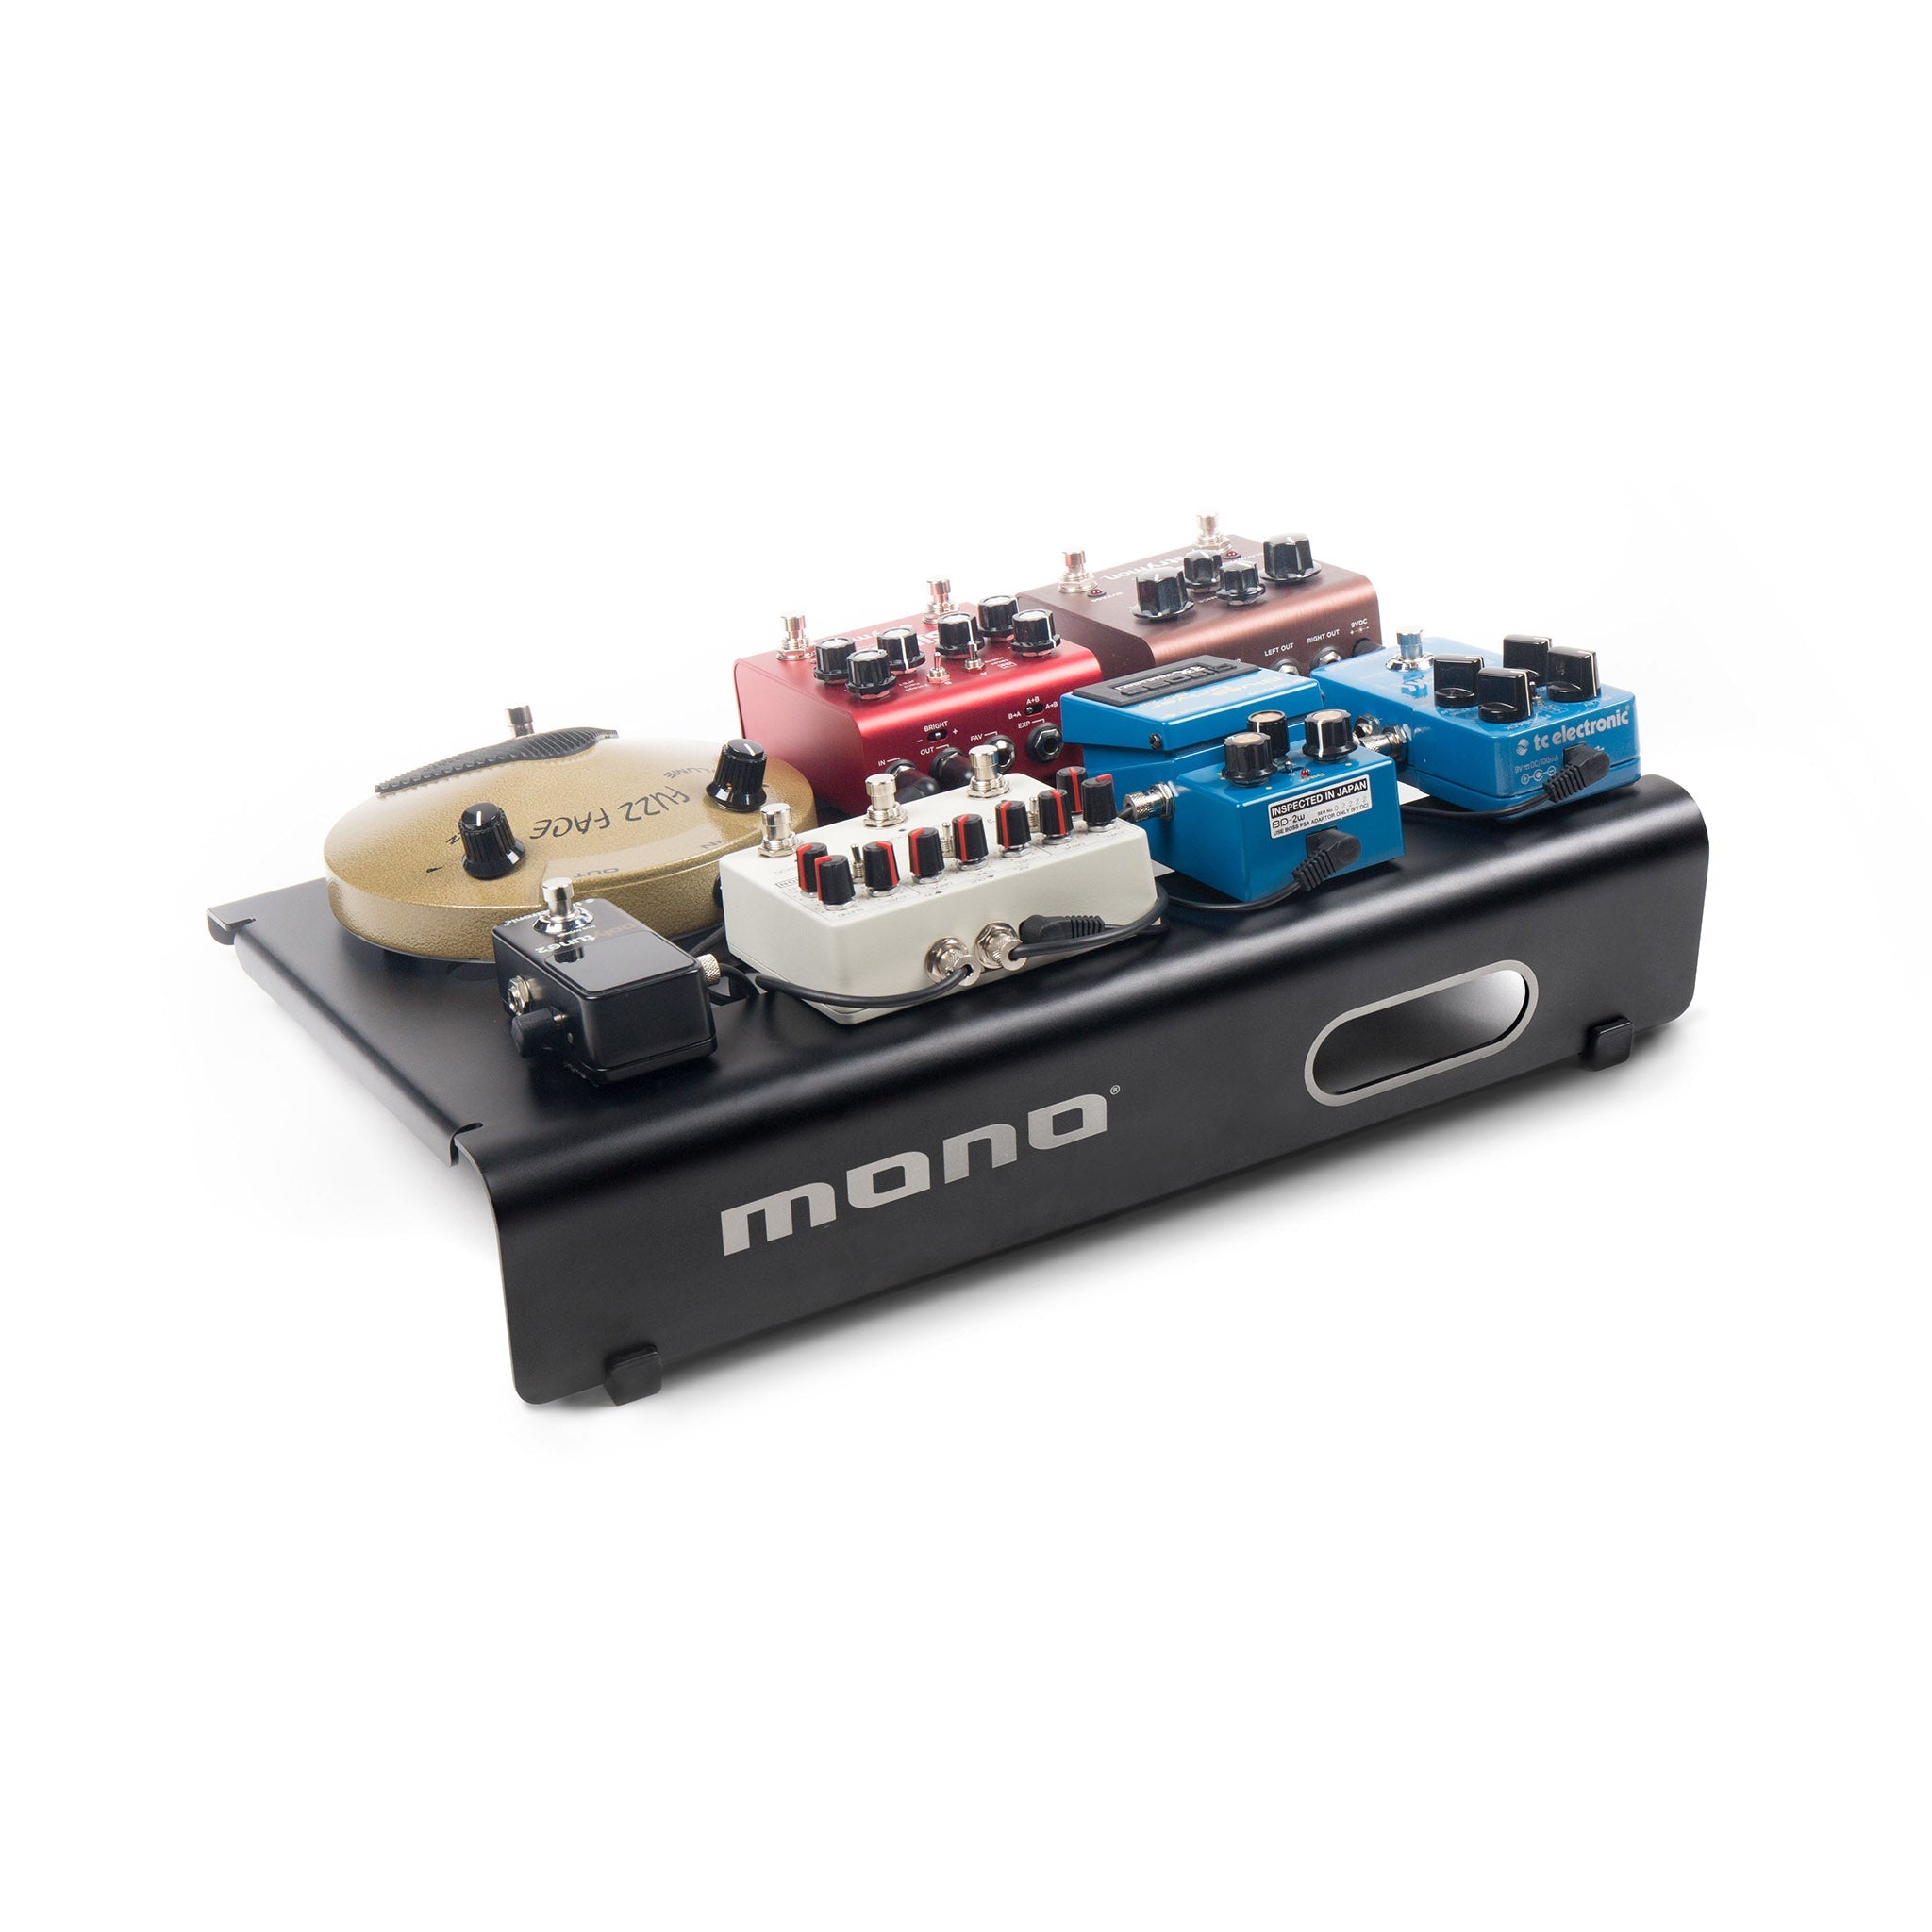 MONO Pedalboard Small, Black and Club Accessory Case 2.0, Black - ZOSO MUSIC